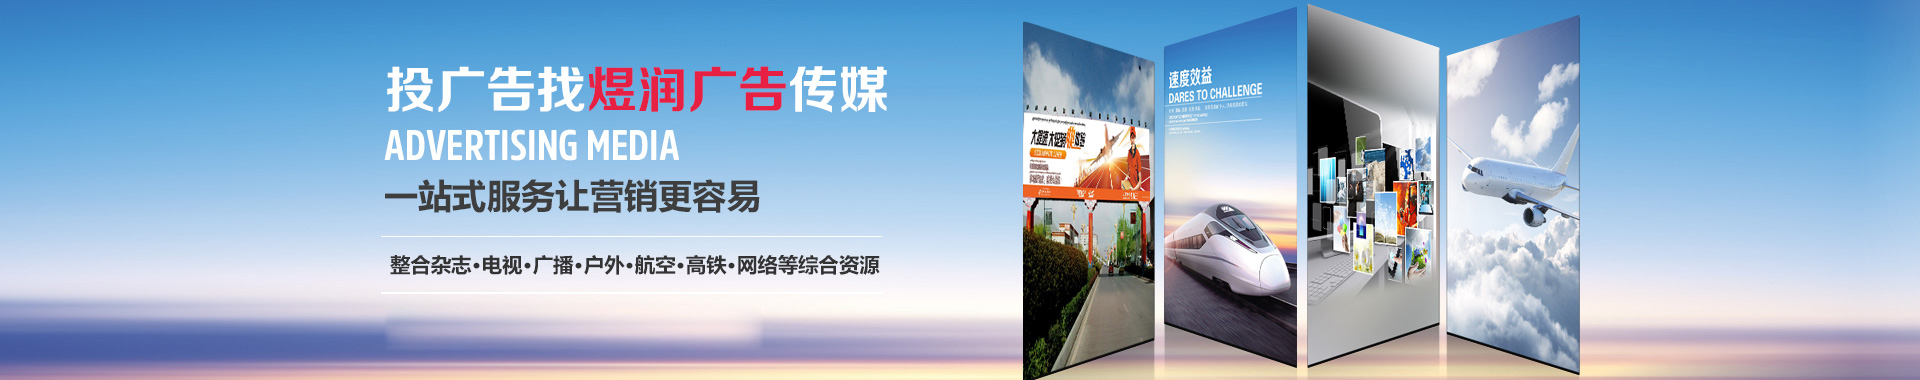 财富中文版,杂志广告投放电话,2020年广告刊例价格